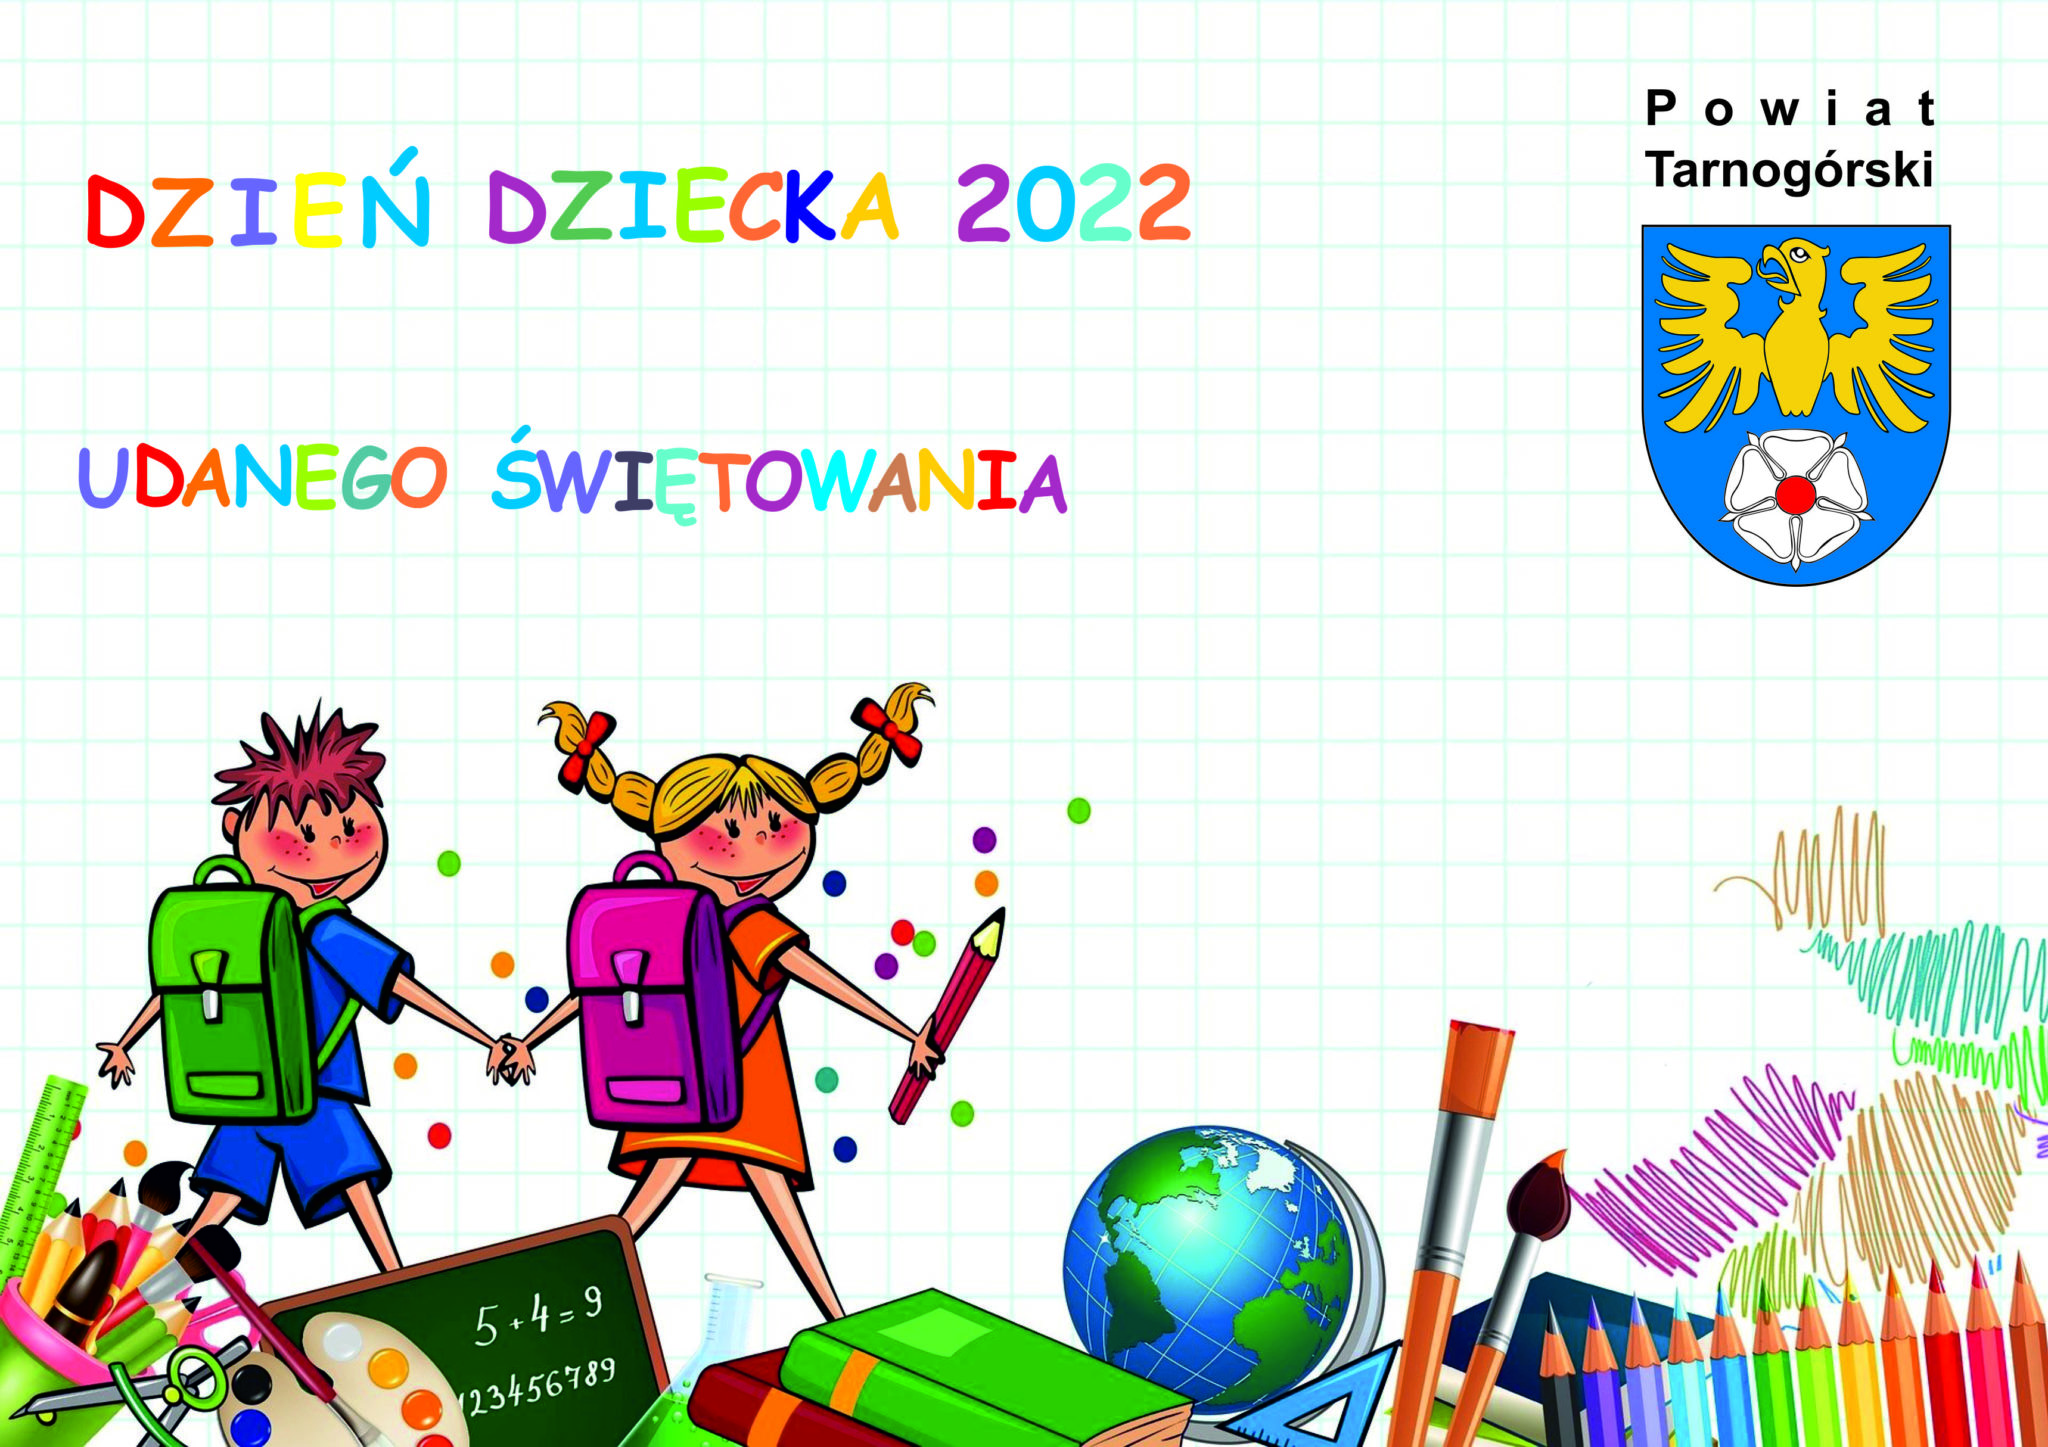 obrazek z napisem Dzień Dziecka, udanego świętowania, w górnym rogu logo powiatu, na środku animowane dzieci z plecakami